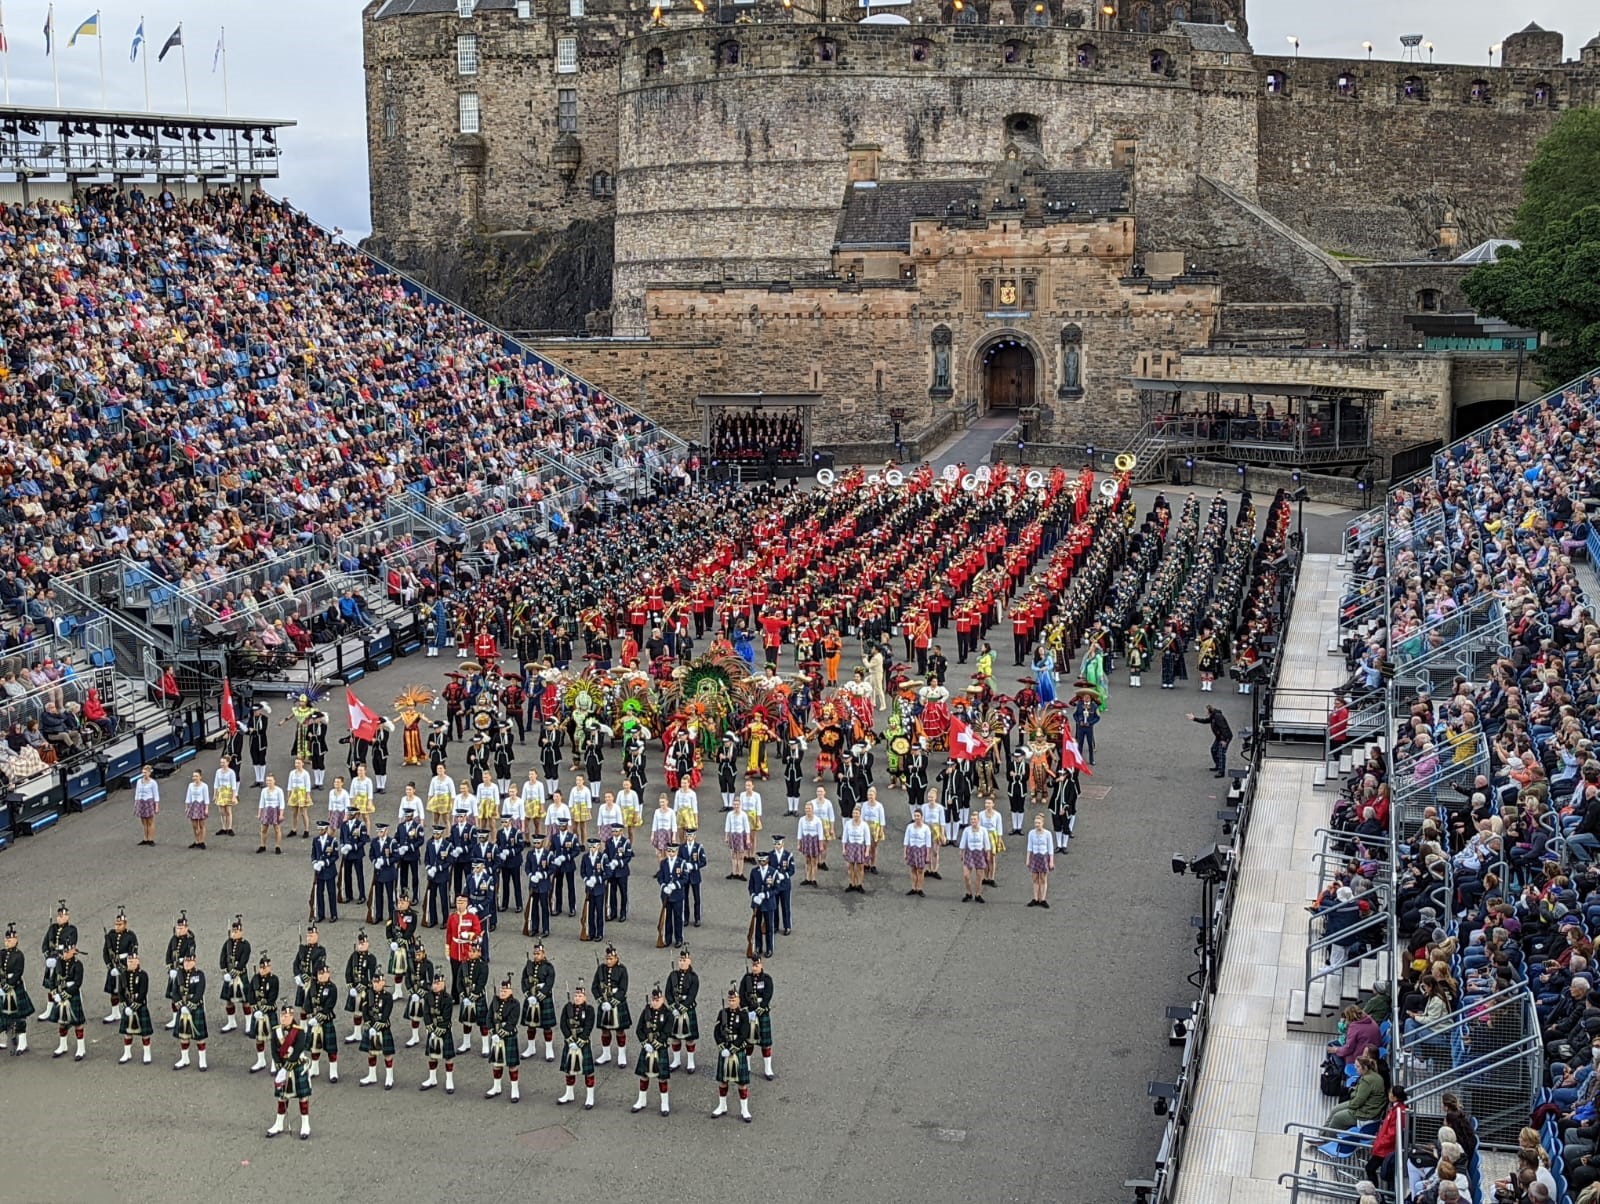 Mãn nhãn với Lễ hội quân sự Edinburgh hoàng gia 2022: Cuối cùng thì năm 2022 cũng đến và chúng ta đã được thưởng thức một Lễ hội quân sự Edinburgh hoàng gia tuyệt vời! Chứng kiến các màn trình diễn ánh sáng, tinh thần đoàn kết và mạnh mẽ của các quốc gia trên thế giới.